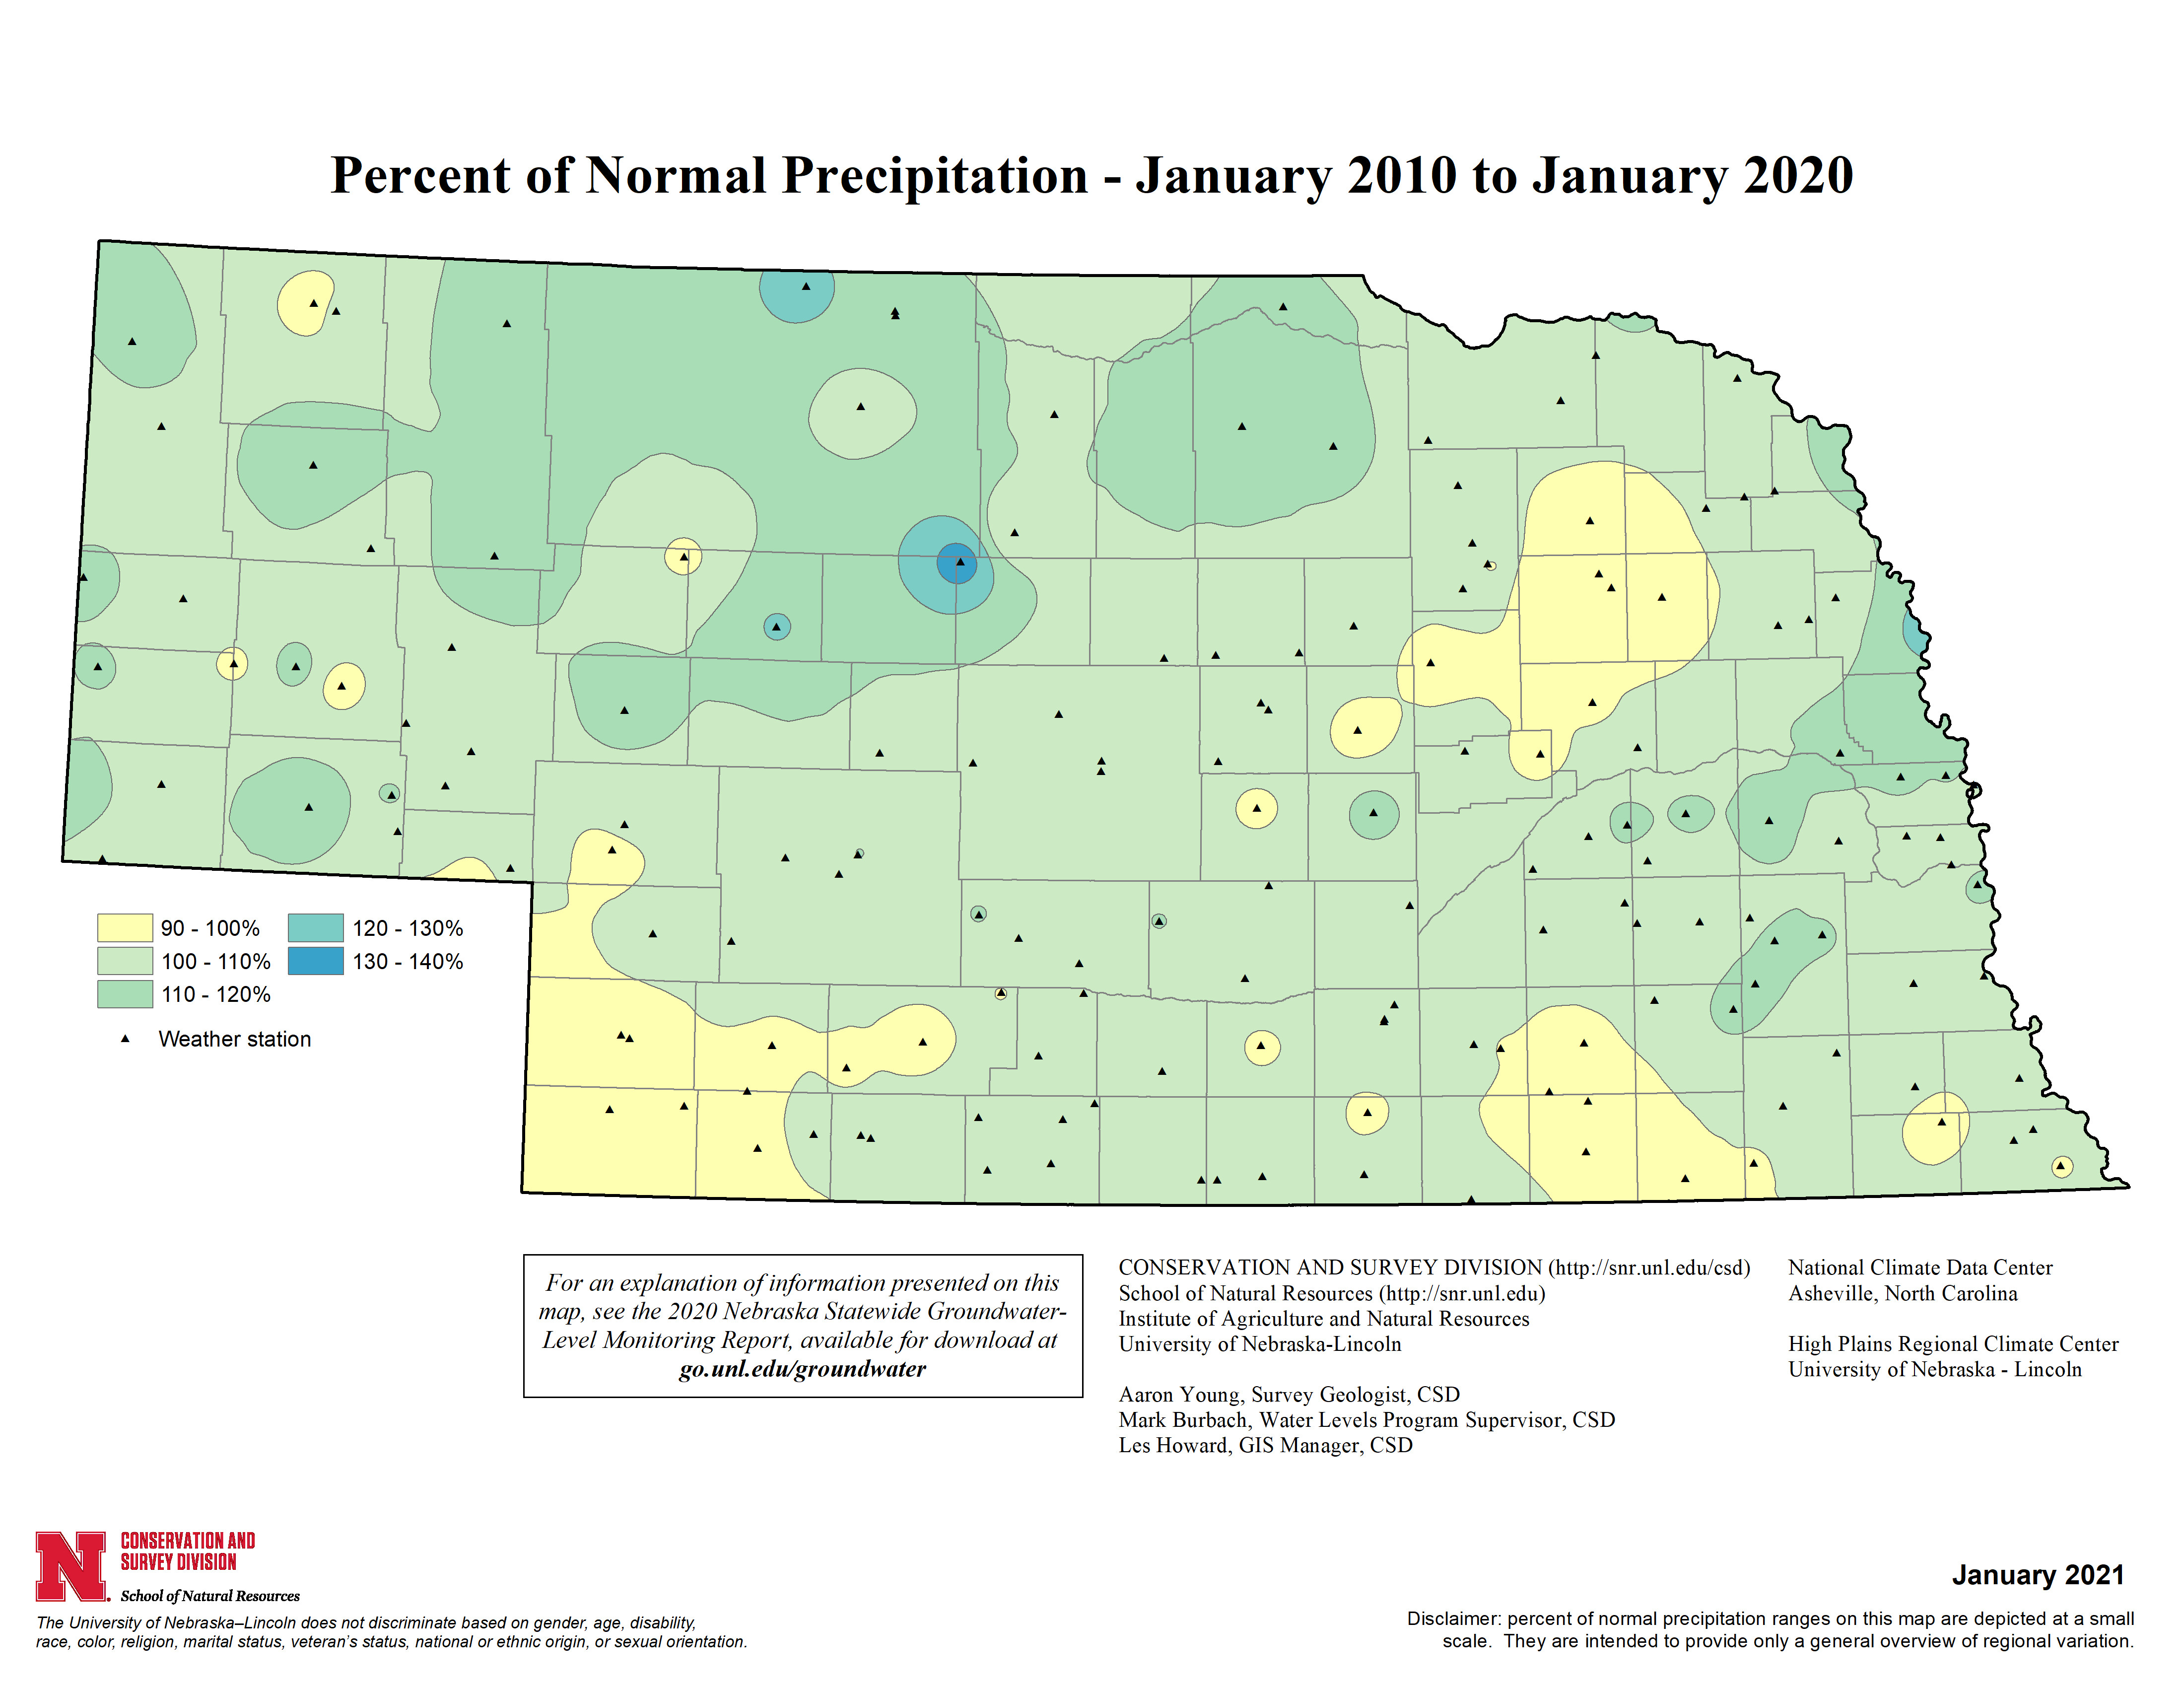 Percent of Normal Precipitation, January 2010 - January 2020